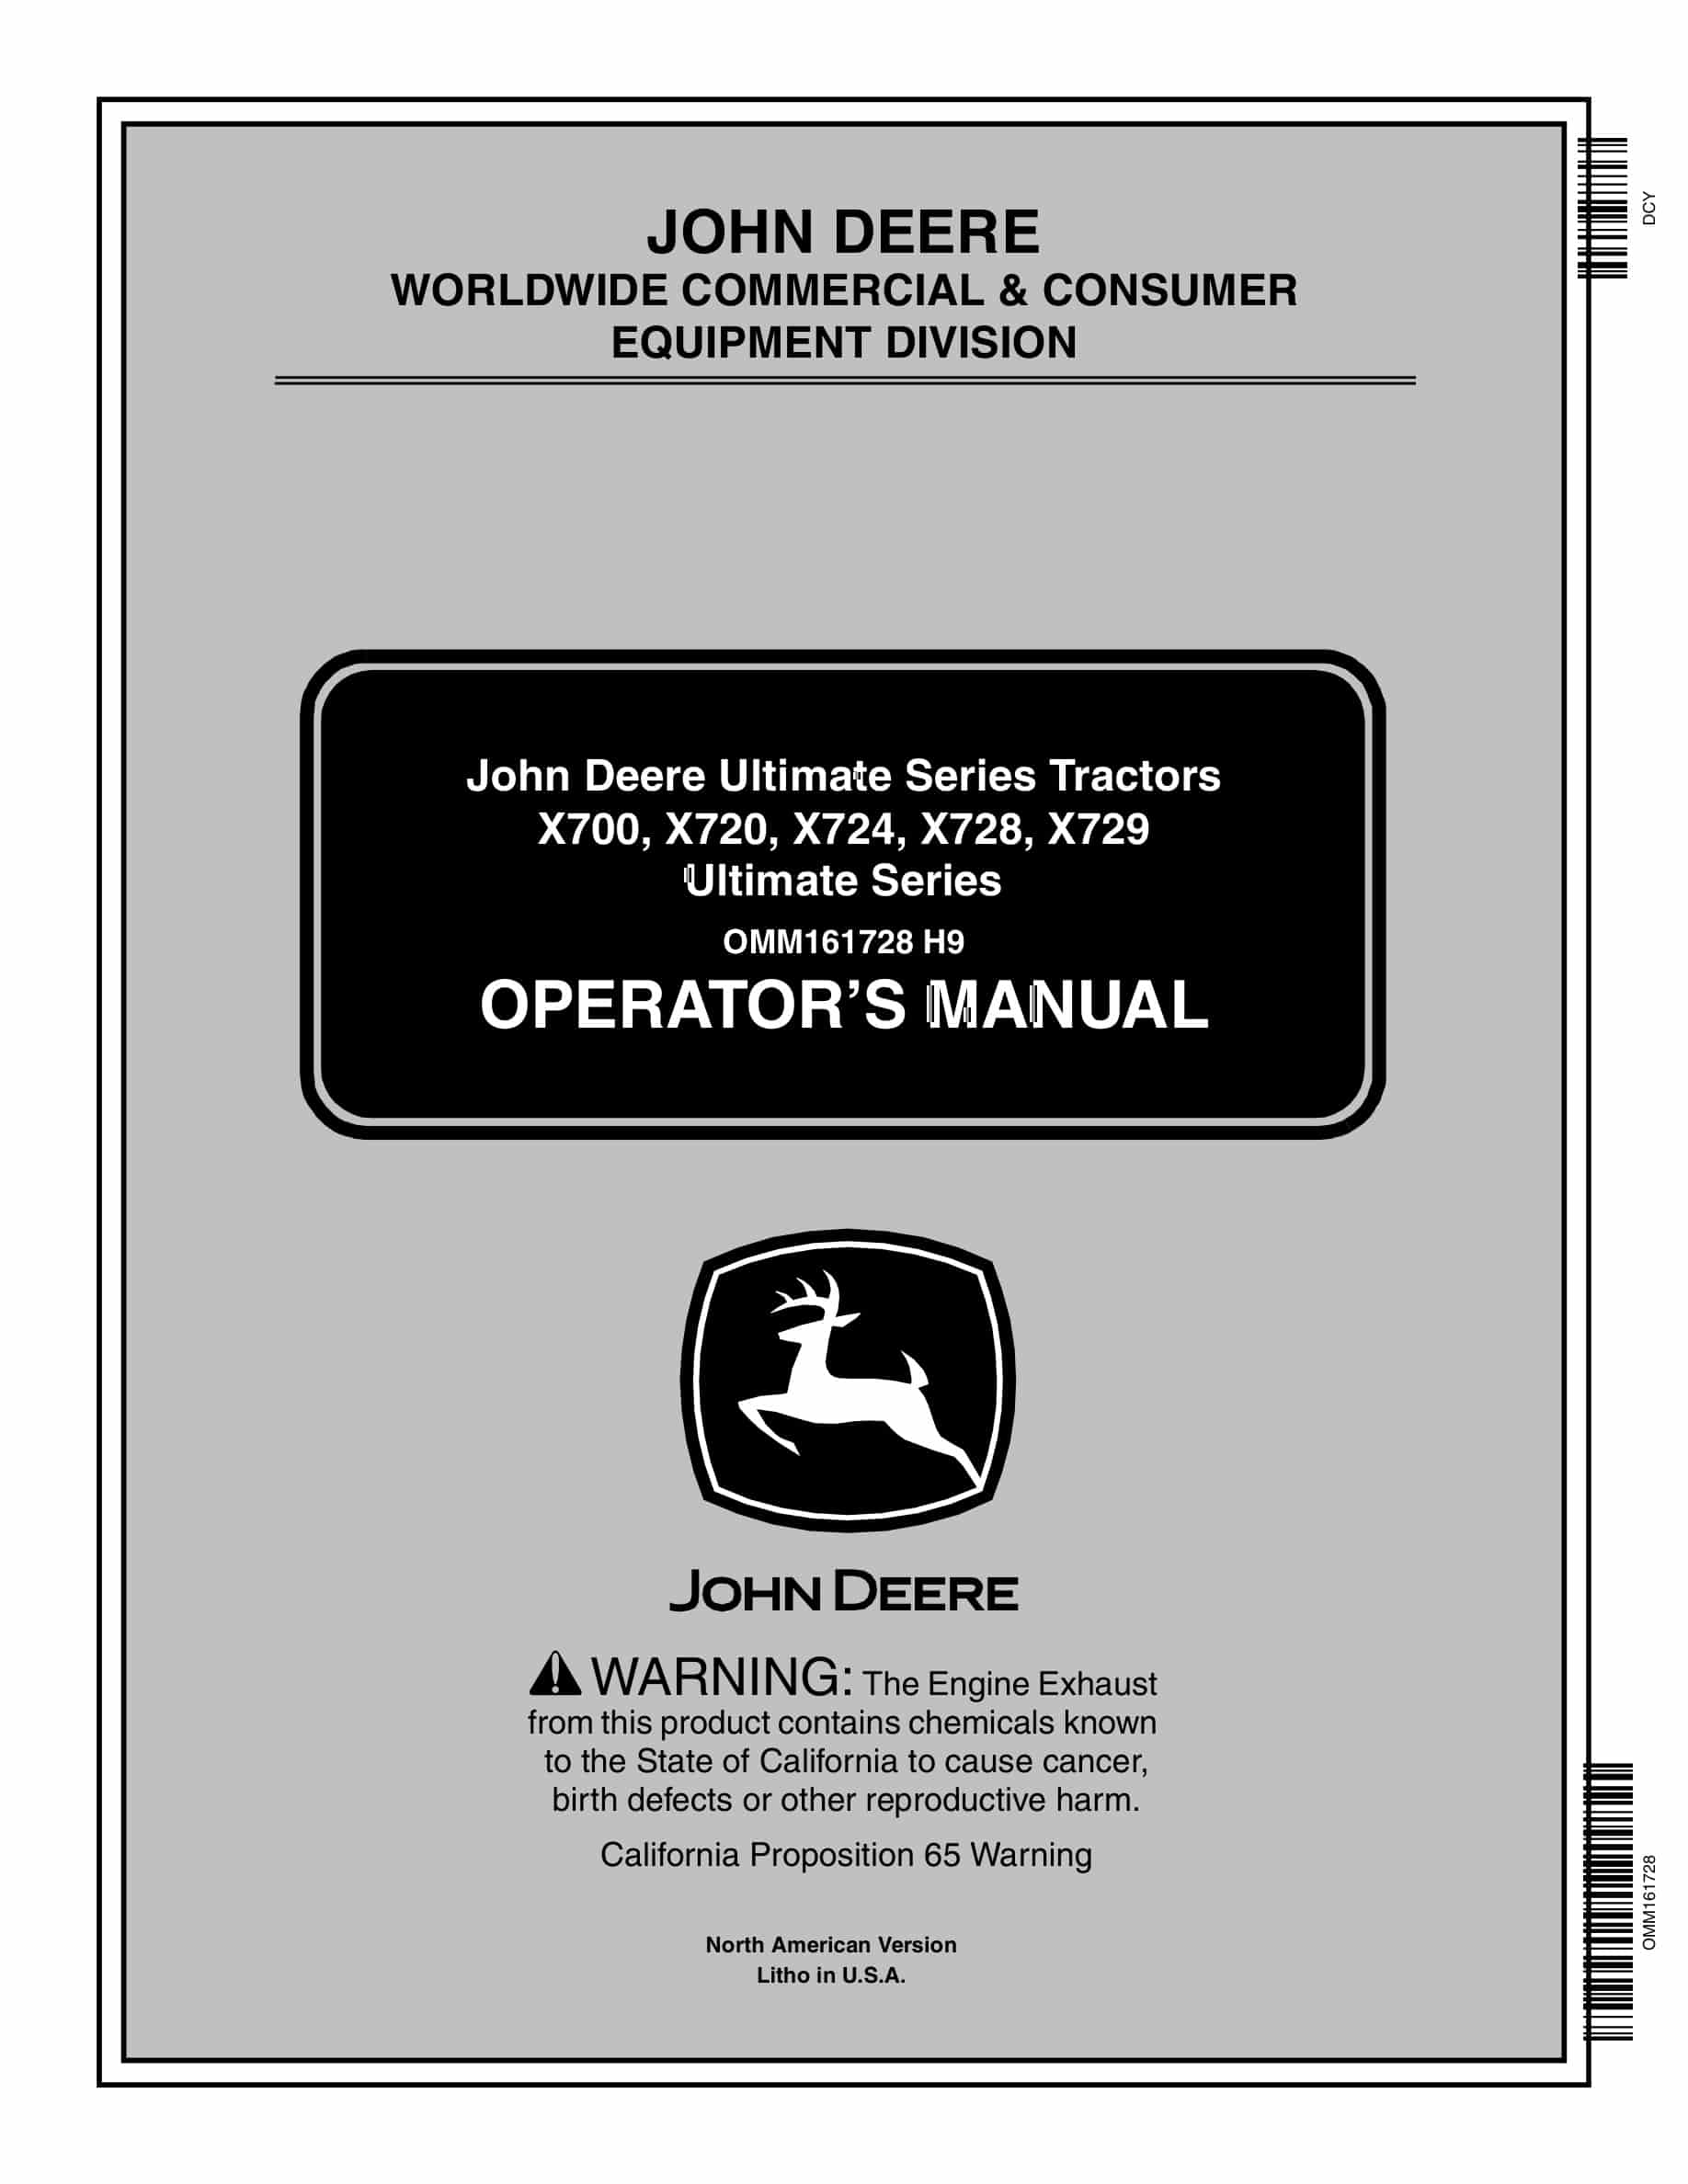 John Deere X700, X720, X724, X728, X729 Tractor Operator Manual OMM161728-1